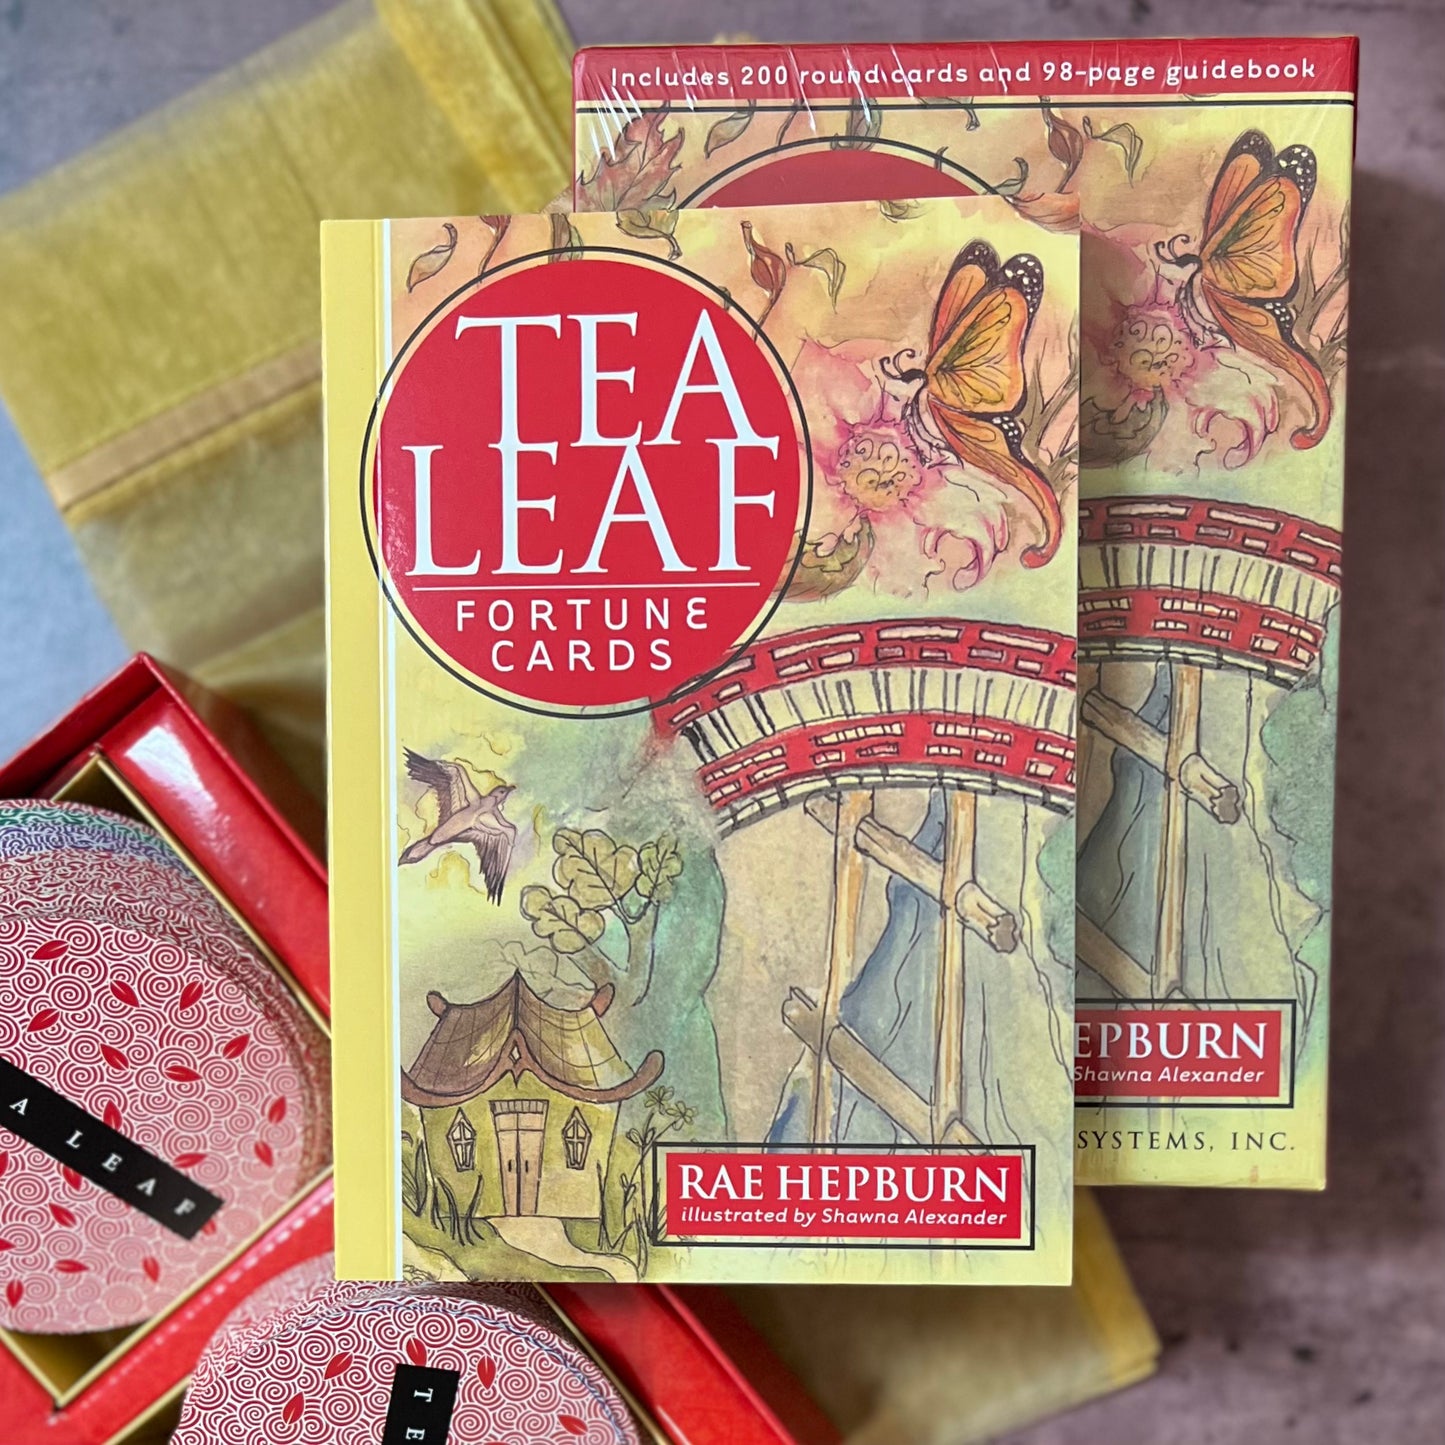 Tea Leaf Fortune Cards by Rae Hepburn